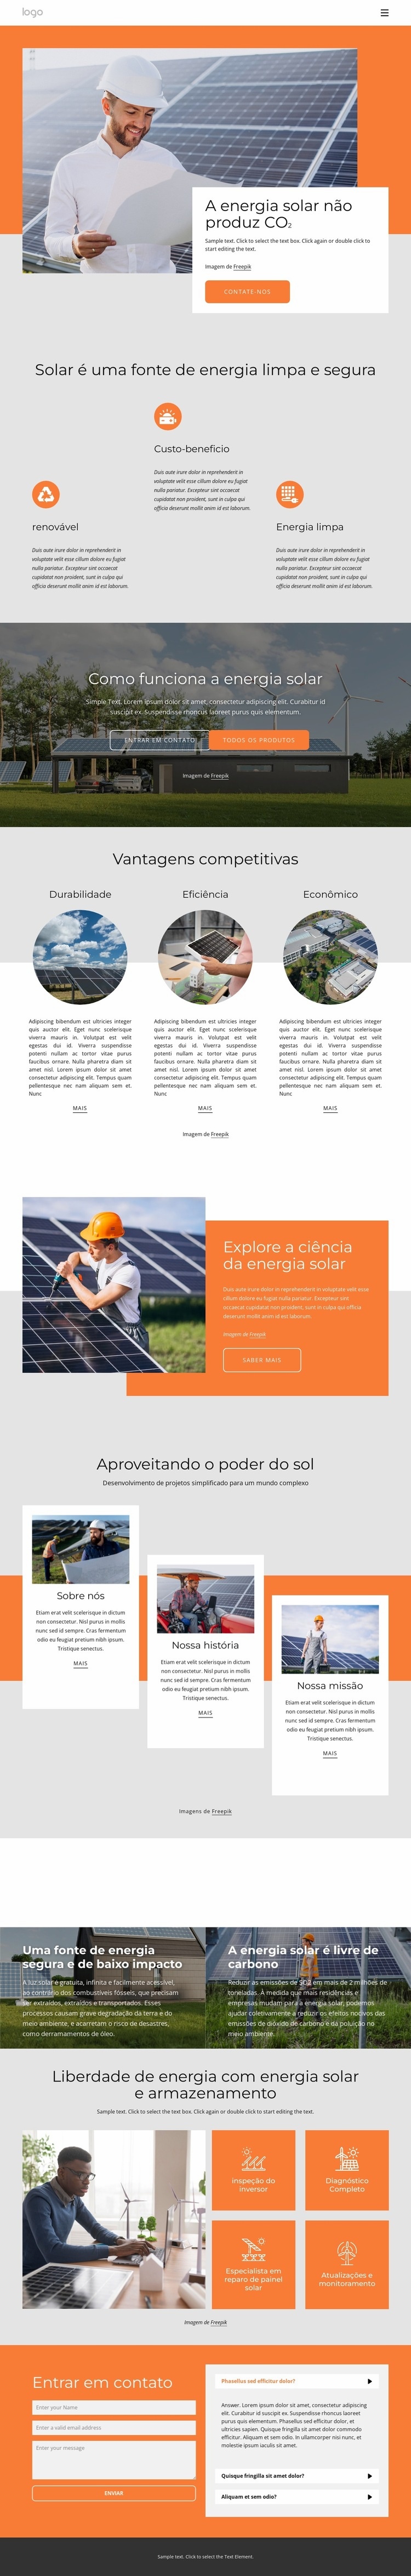 Alimente sua casa com energia solar limpa Construtor de sites HTML